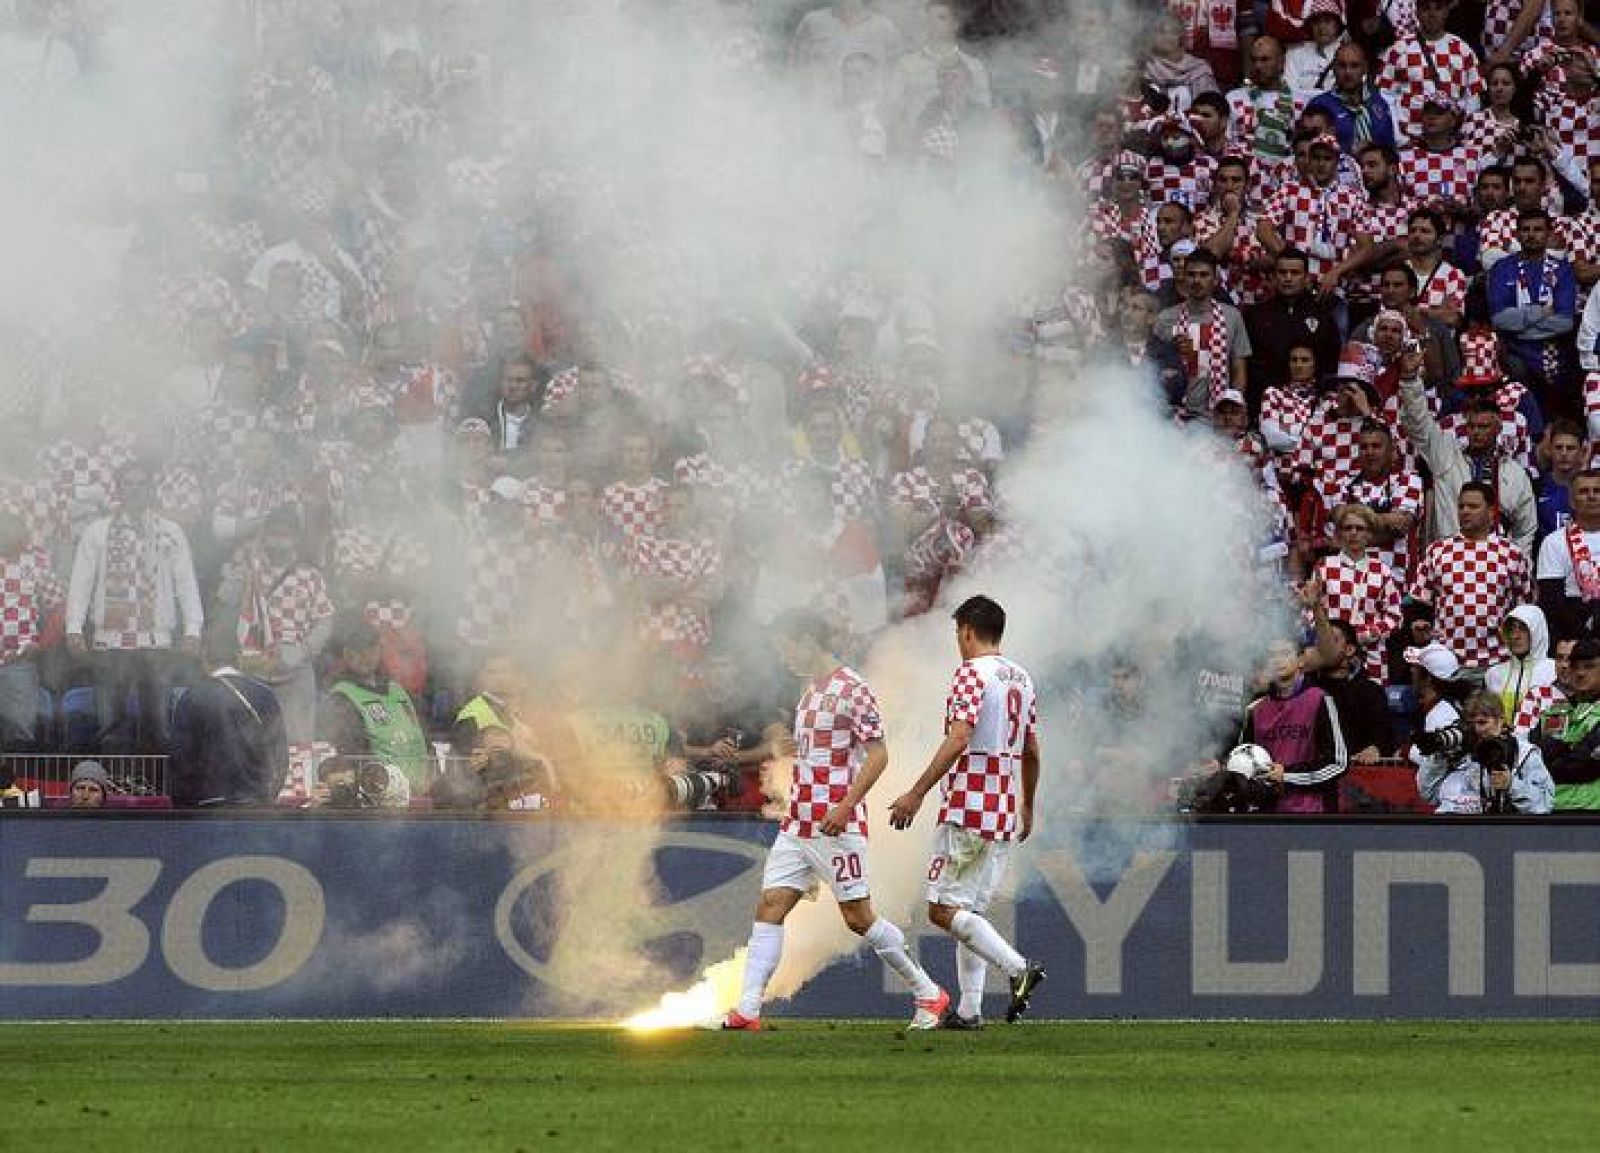 Dos jugadores croatas observan una bengala lanzada al terreno de juego